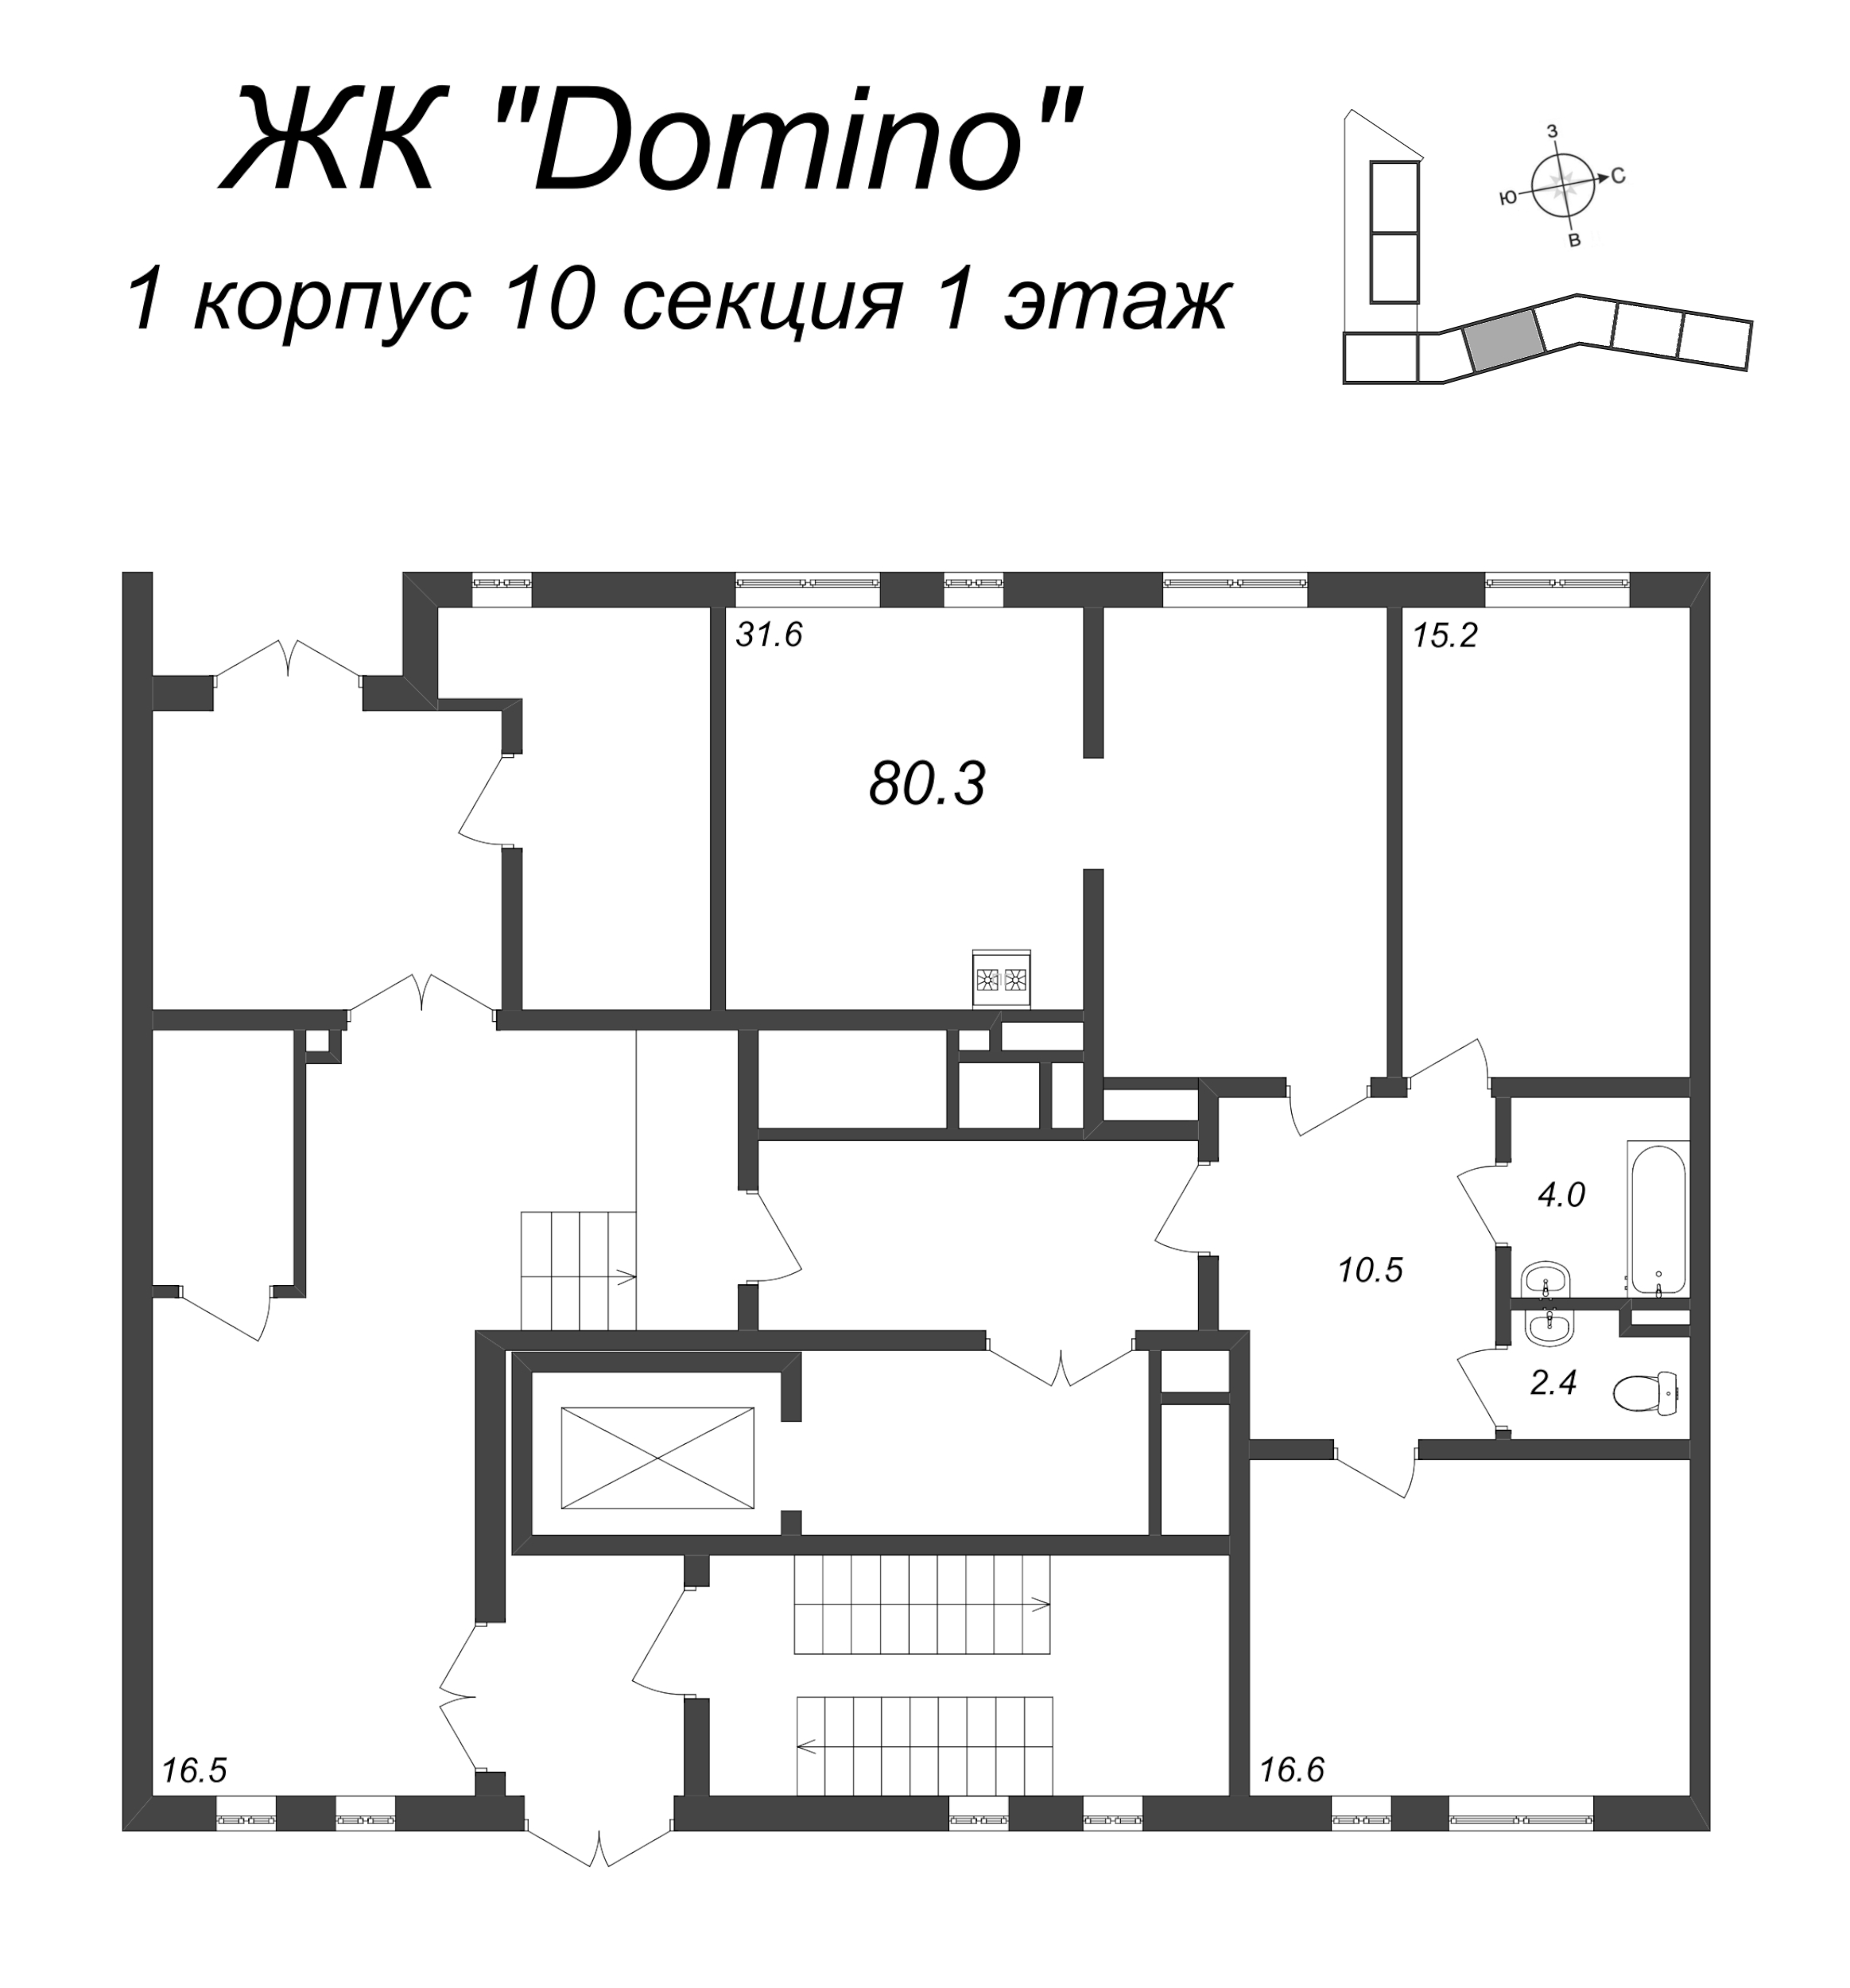 2-комнатная квартира, 80.3 м² в ЖК "Domino Premium" - планировка этажа